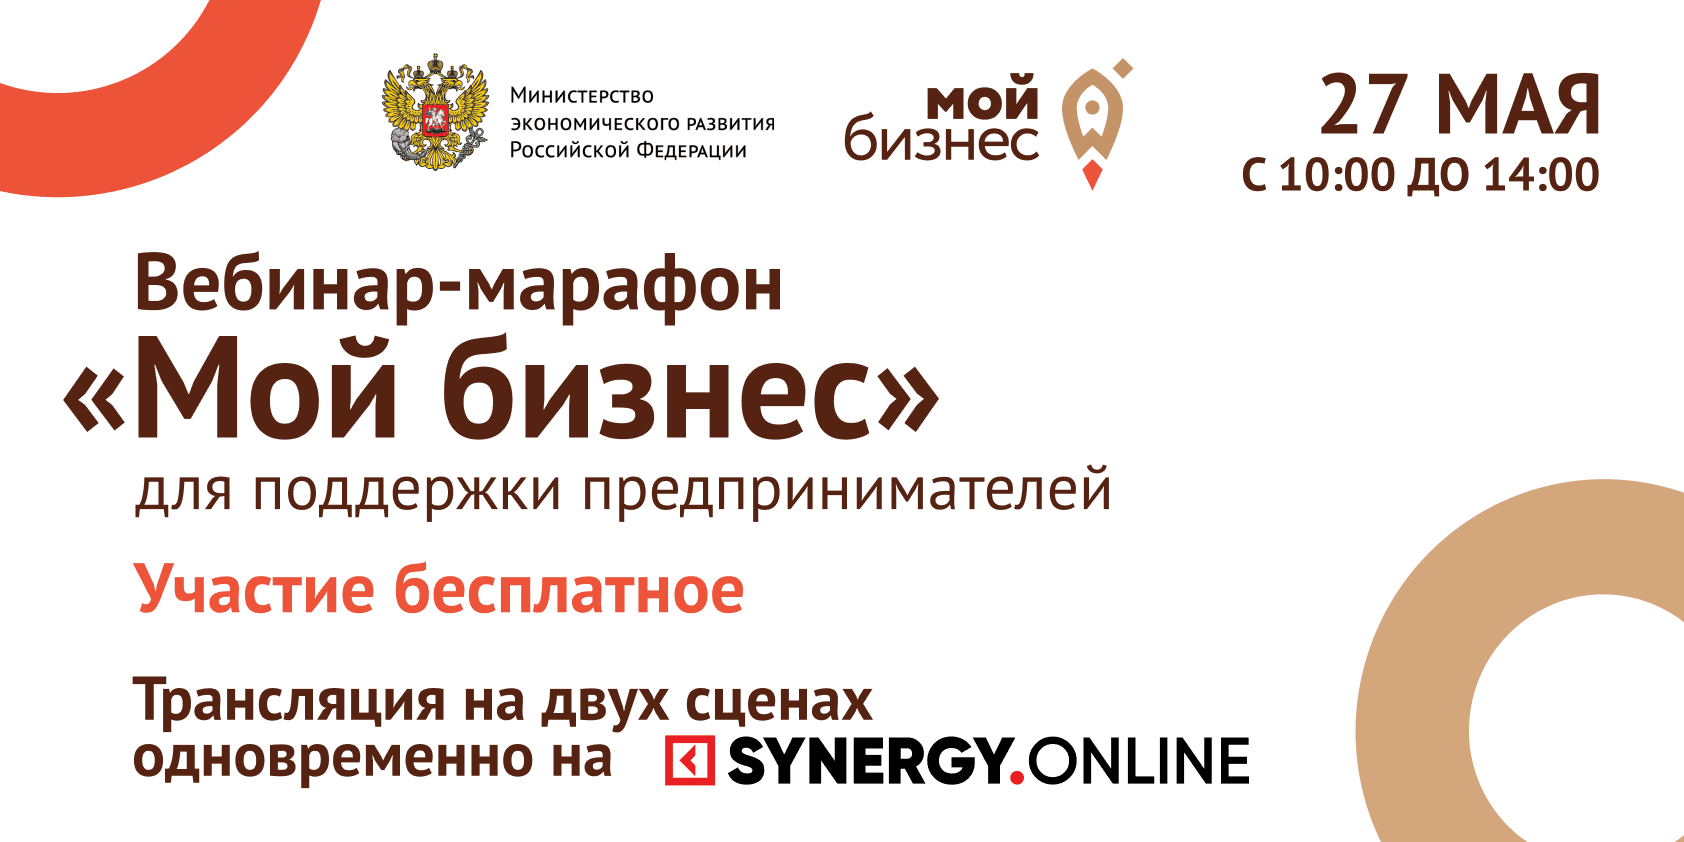 Первое бизнес сторителлинг-шоу, посвящённое Дню российского предпринимательства, состоится в рамках федерального вебинар-марафона «Мой бизнес»